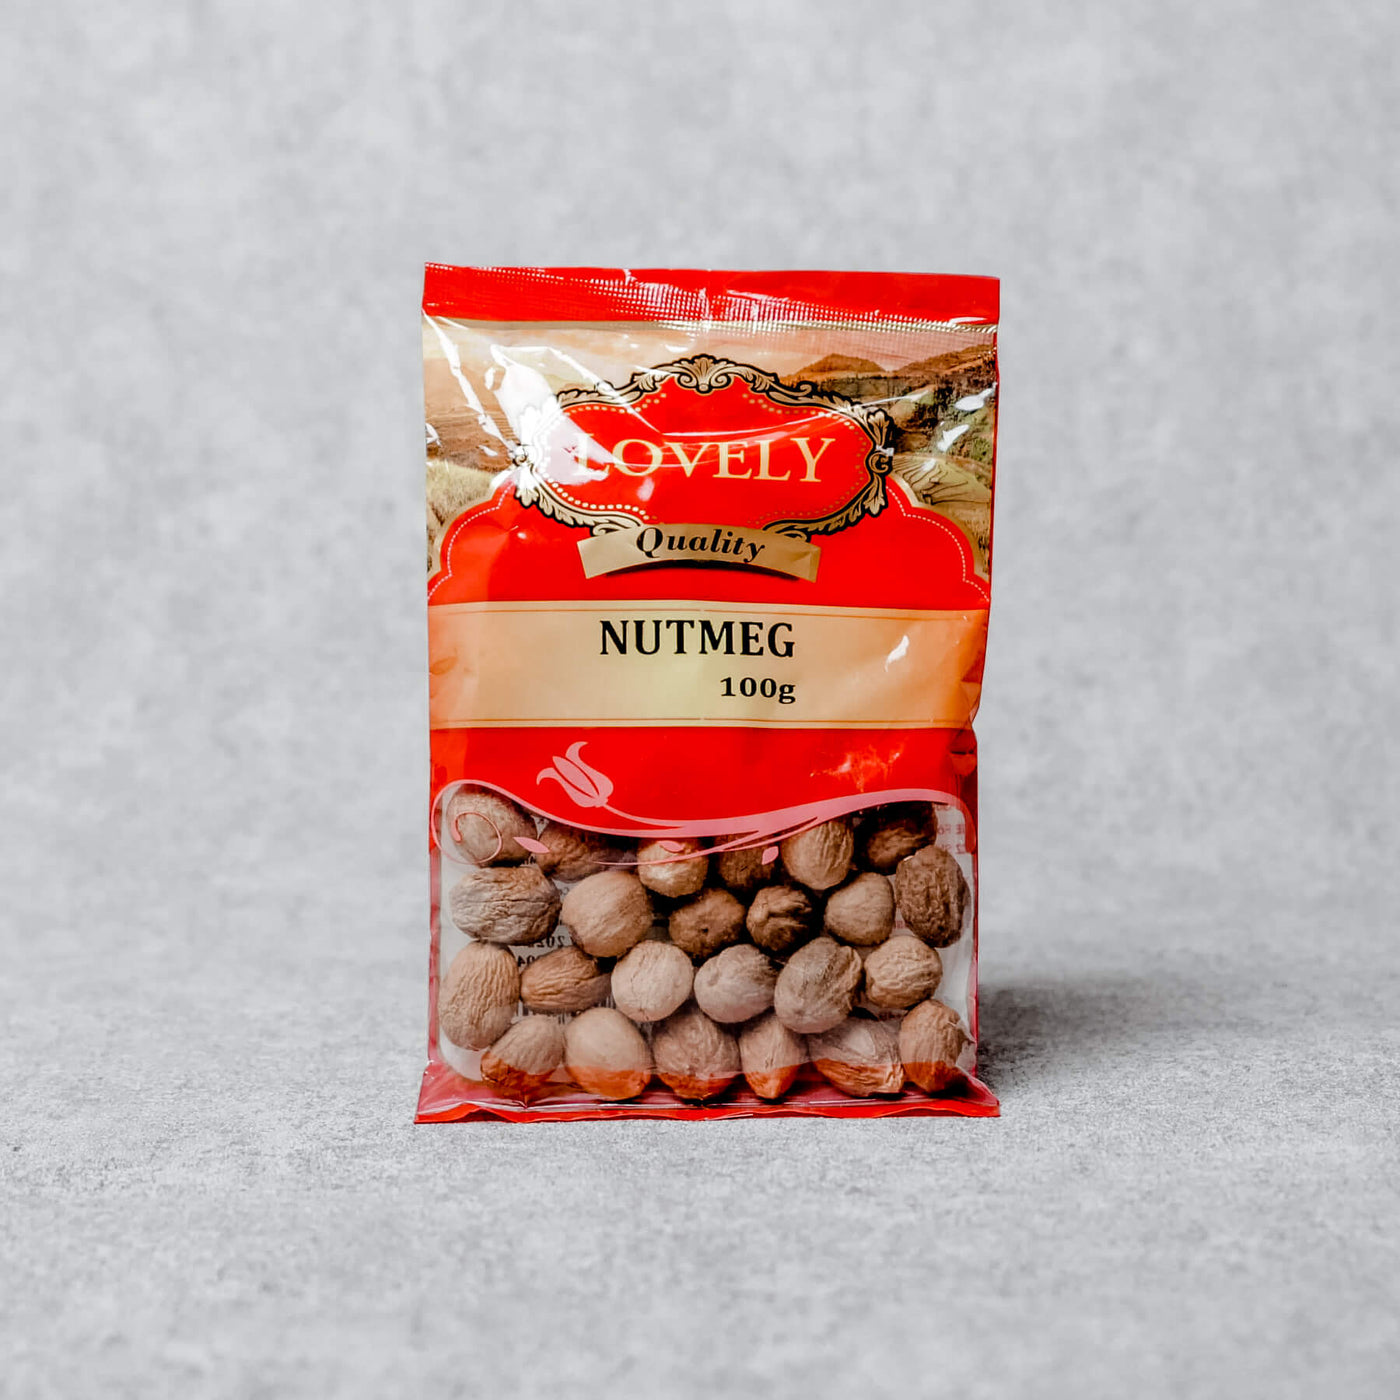 Lovely - Nutmeg